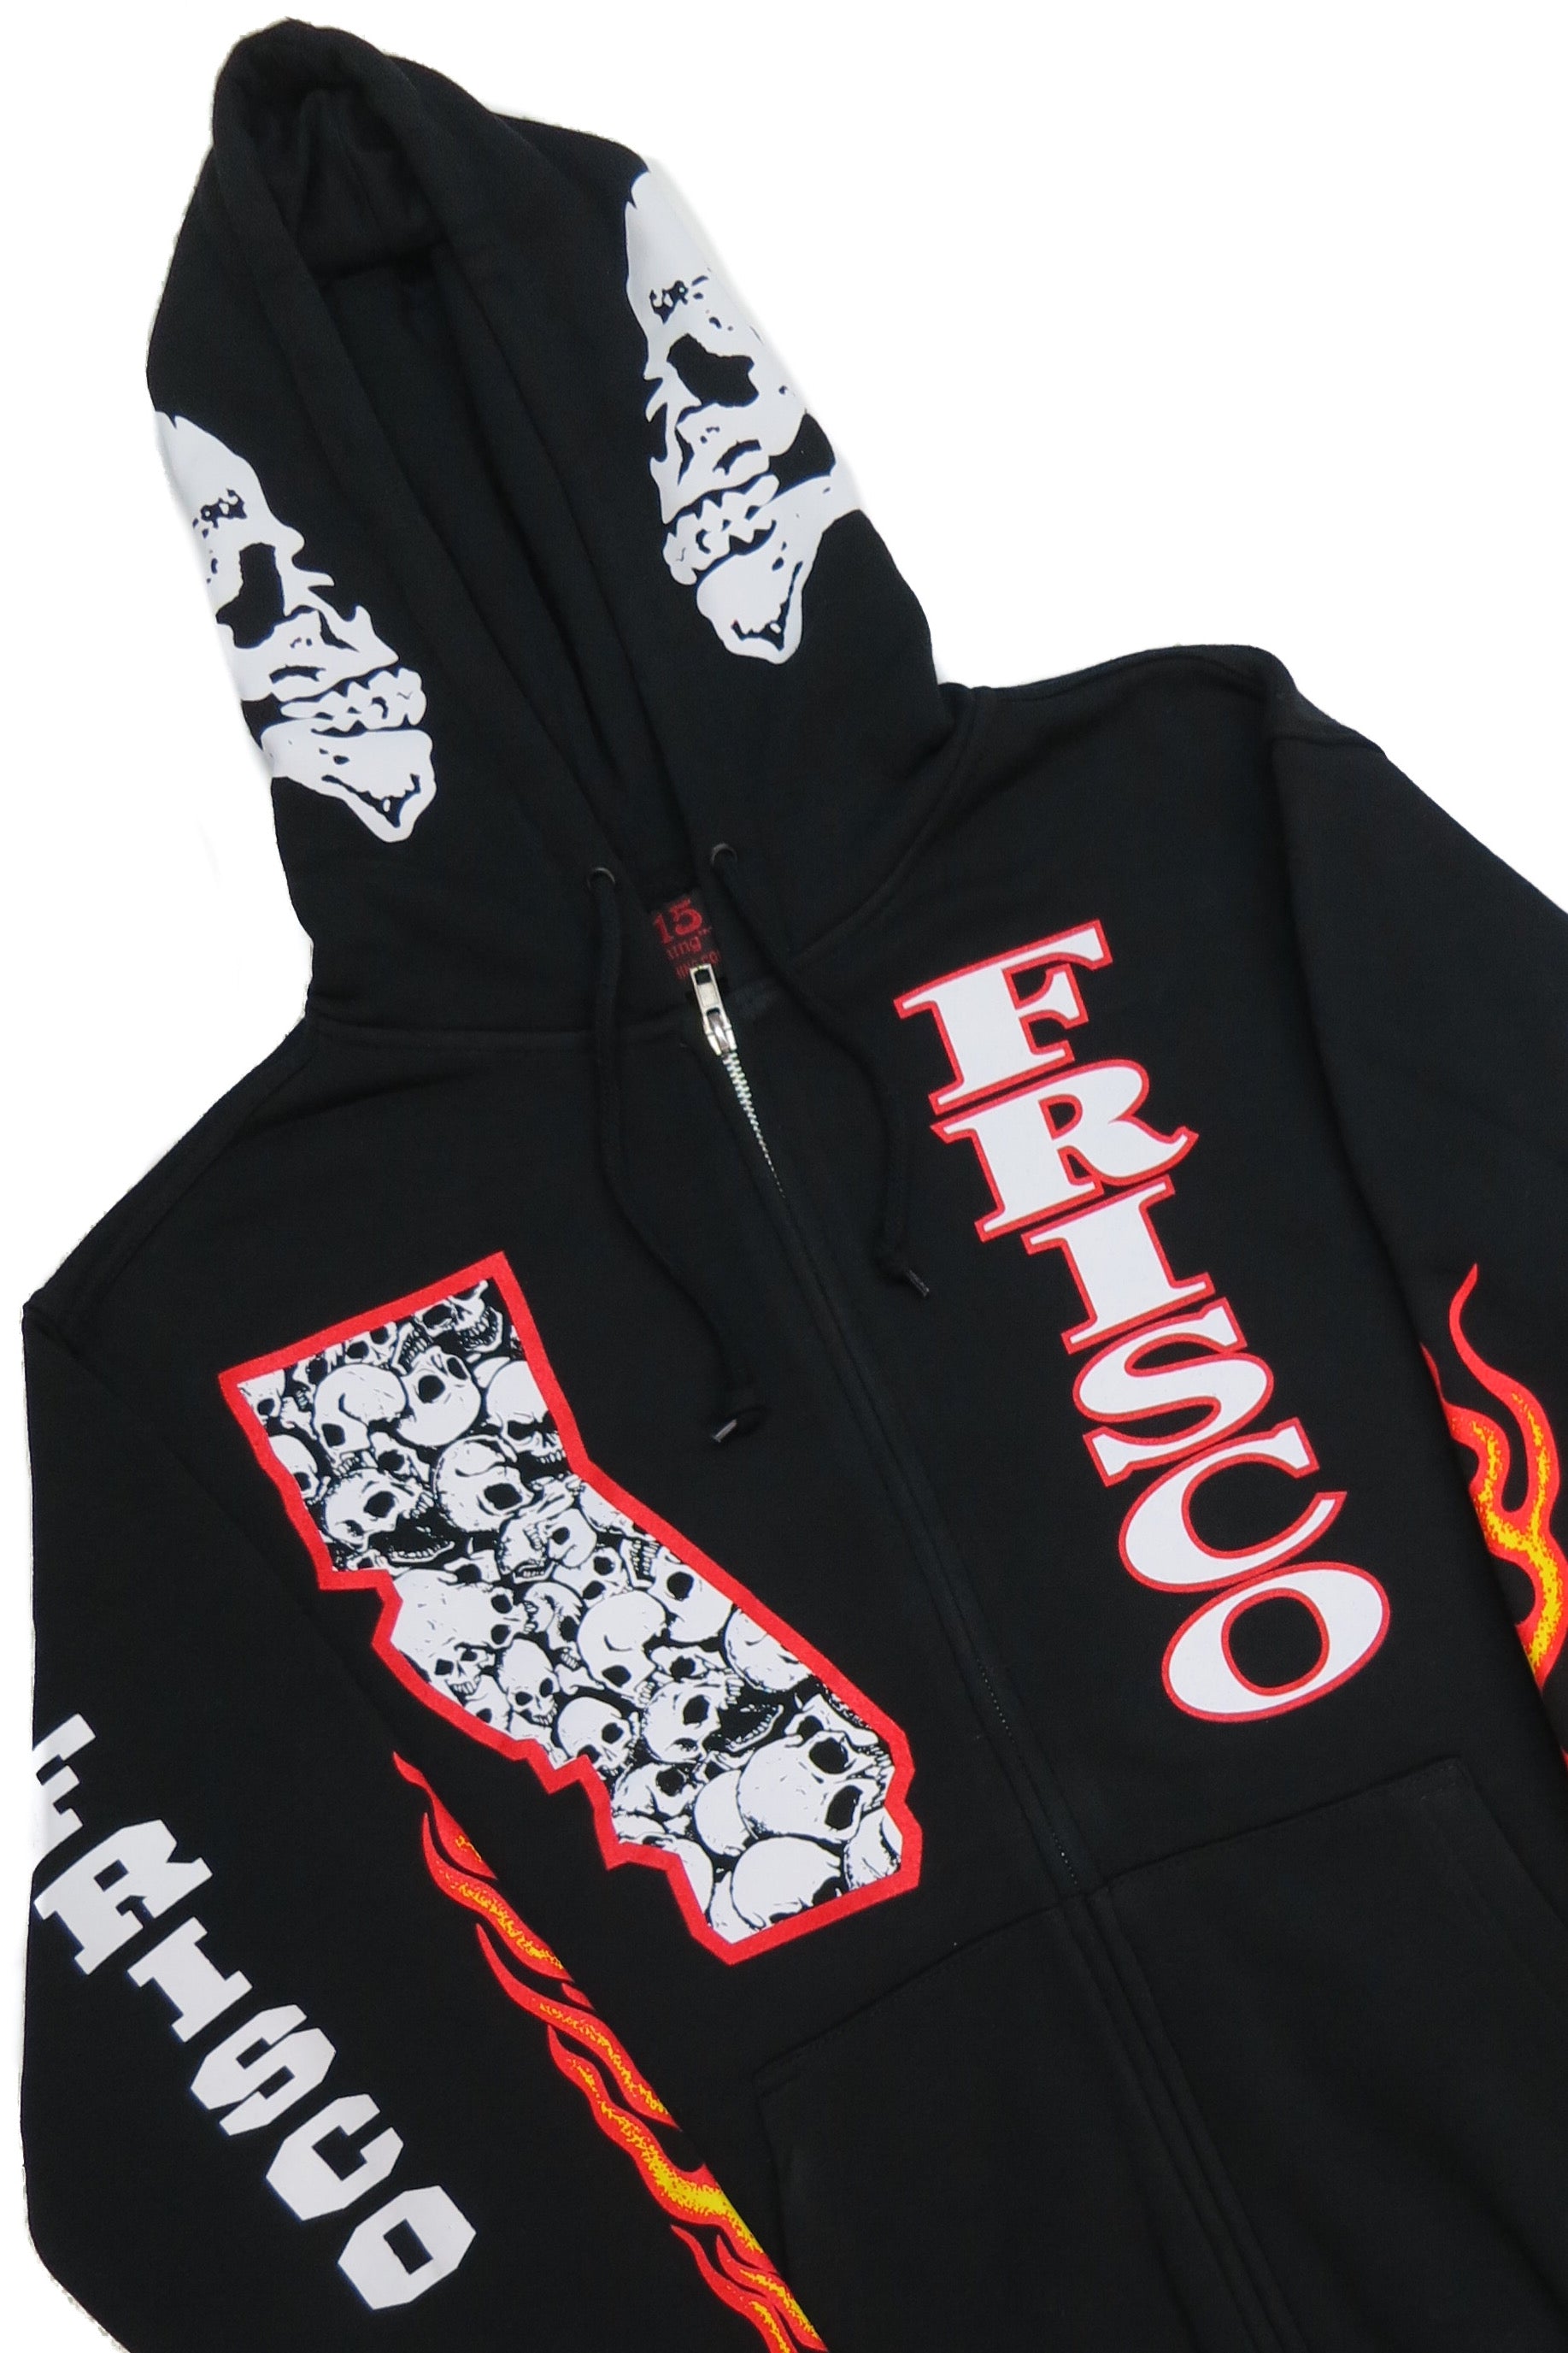 Skulls & Frisco Hooded Zipper Sweatshirt